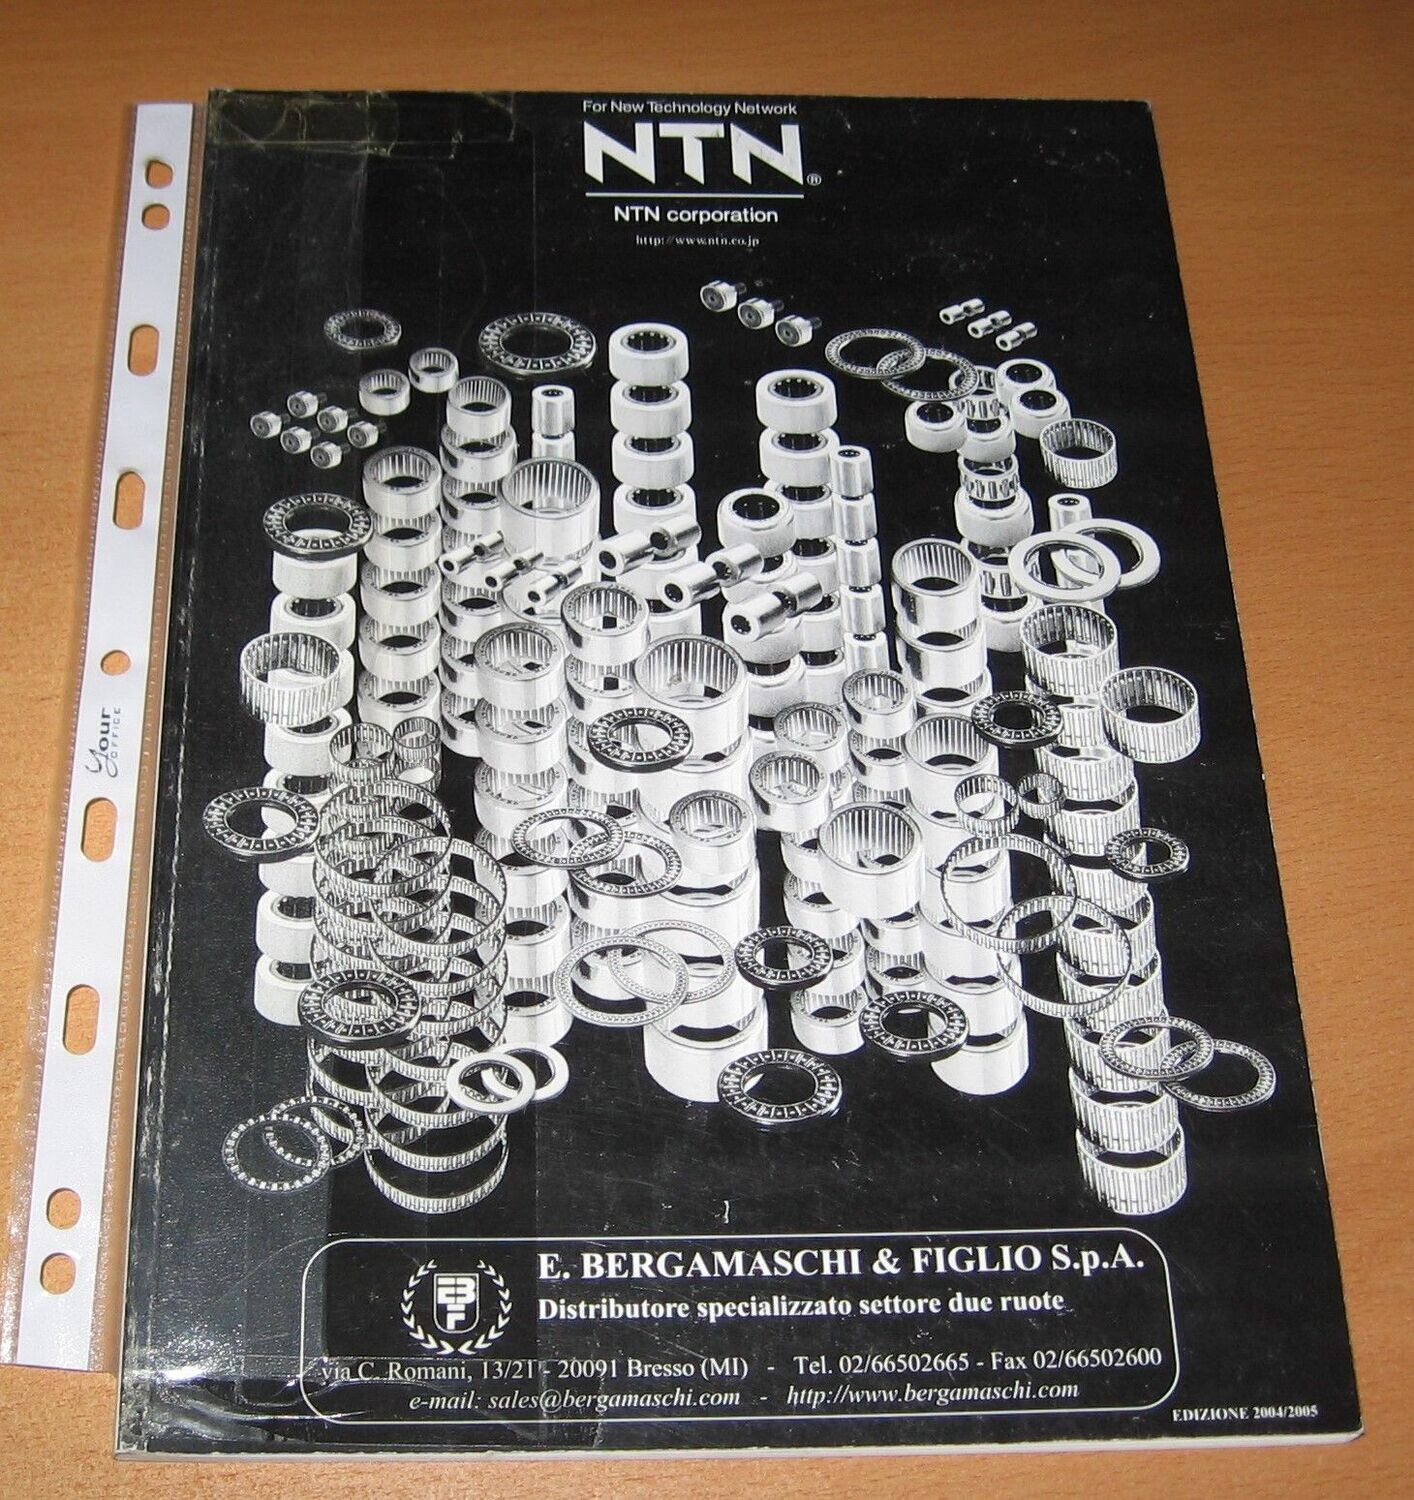 NTN CATALOGO CUSCINETTI 2004-2005